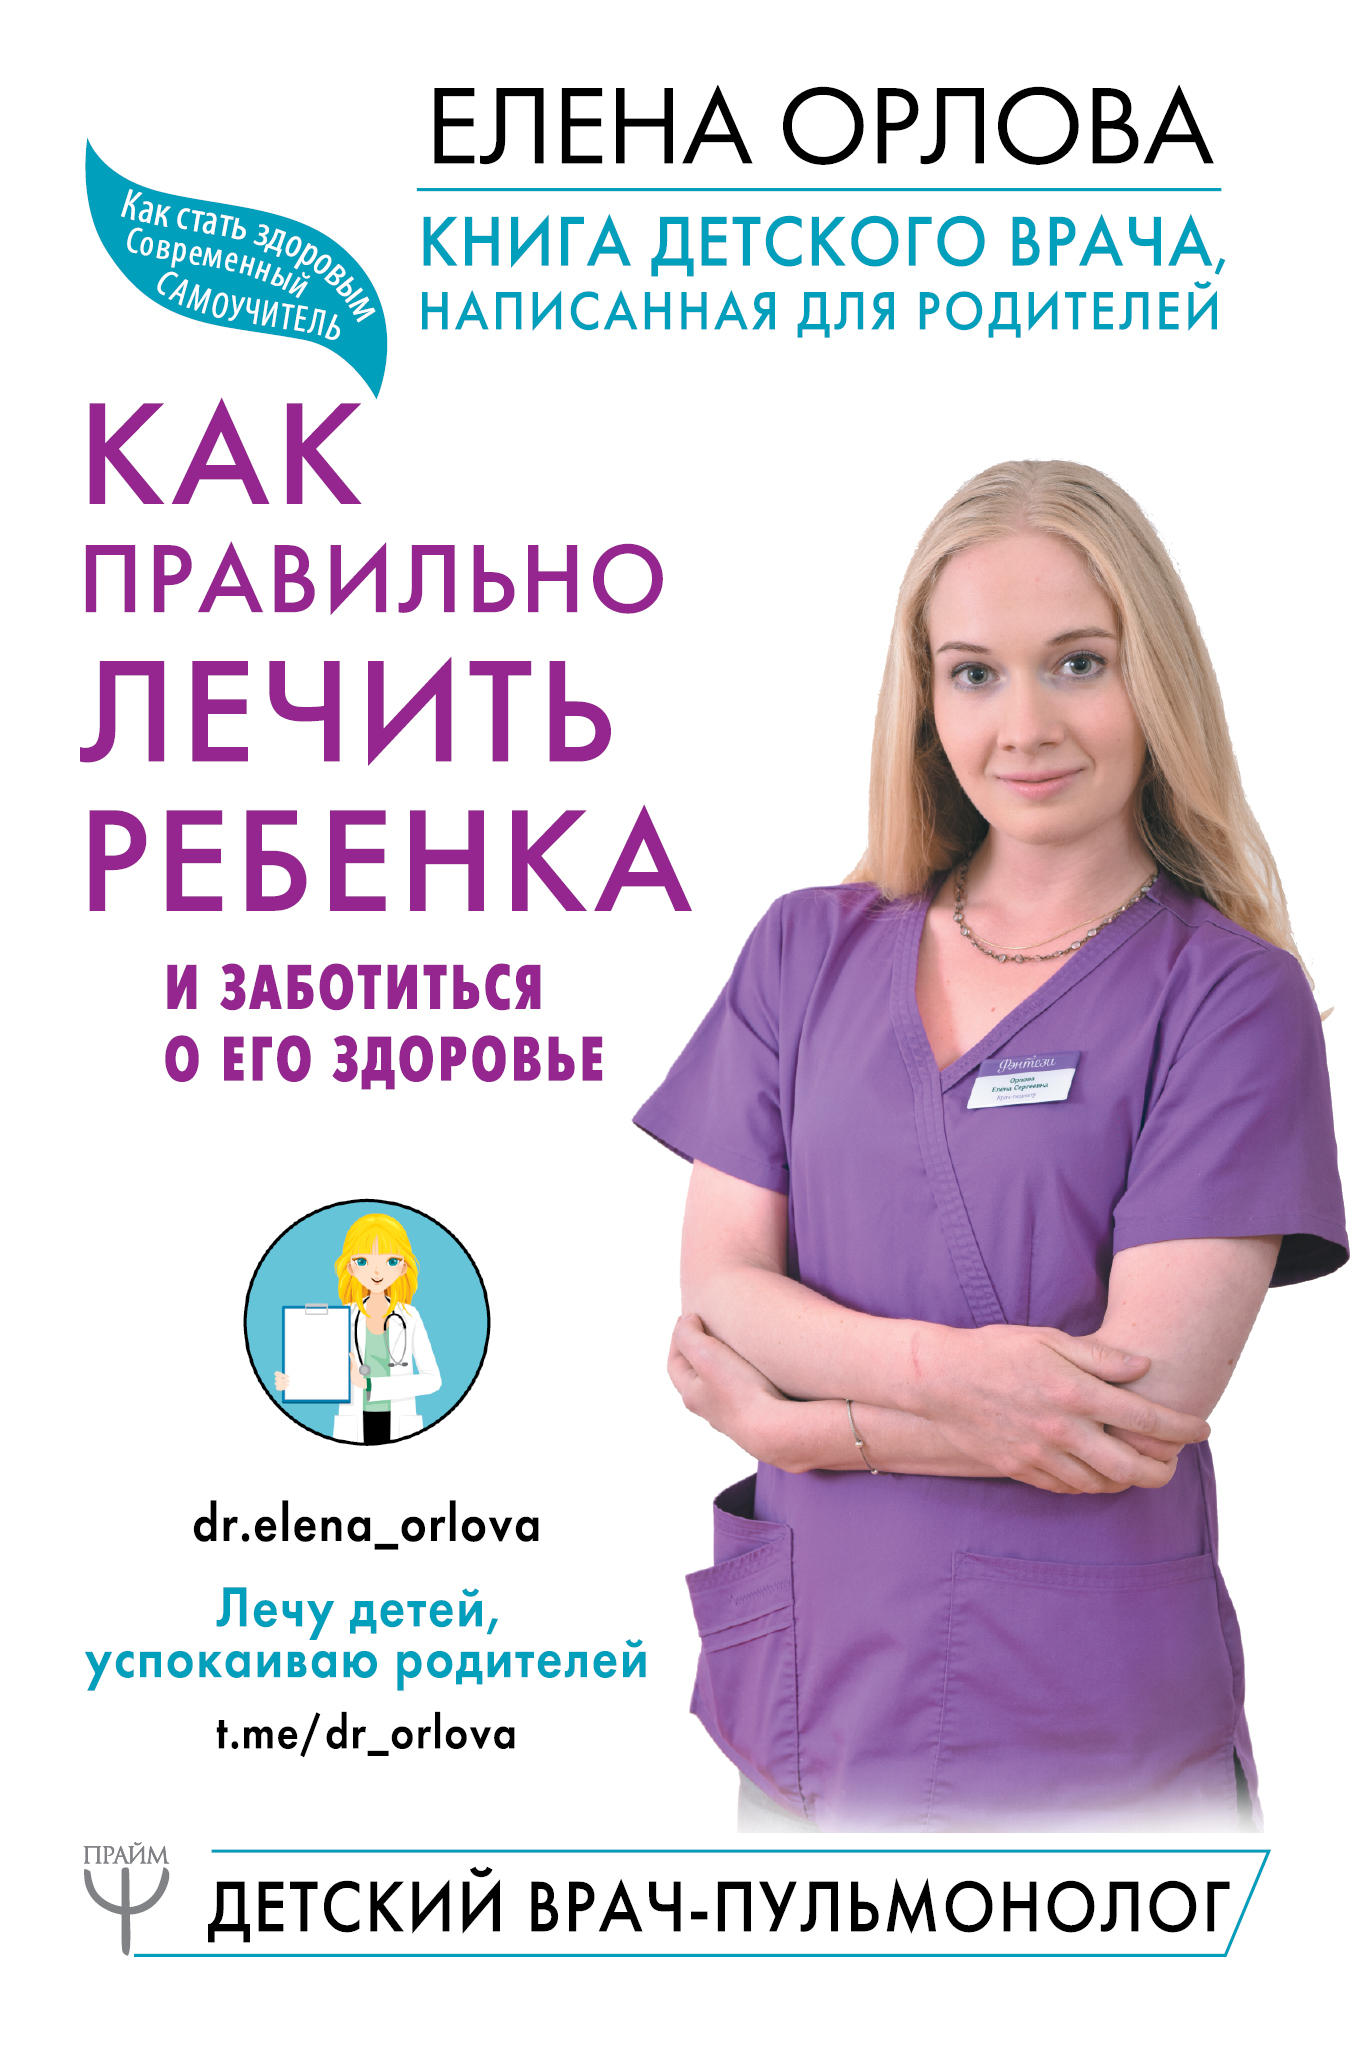 Орлова Елена Сергеевна Книга детского врача, написанная для родителей. Как правильно лечить ребенка и заботиться о его здоровье - страница 0